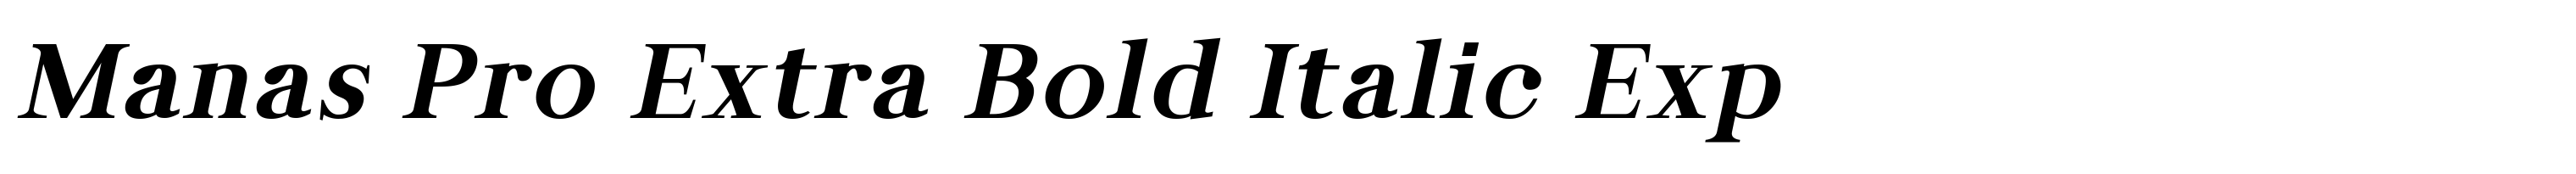 Manas Pro Extra Bold Italic Exp